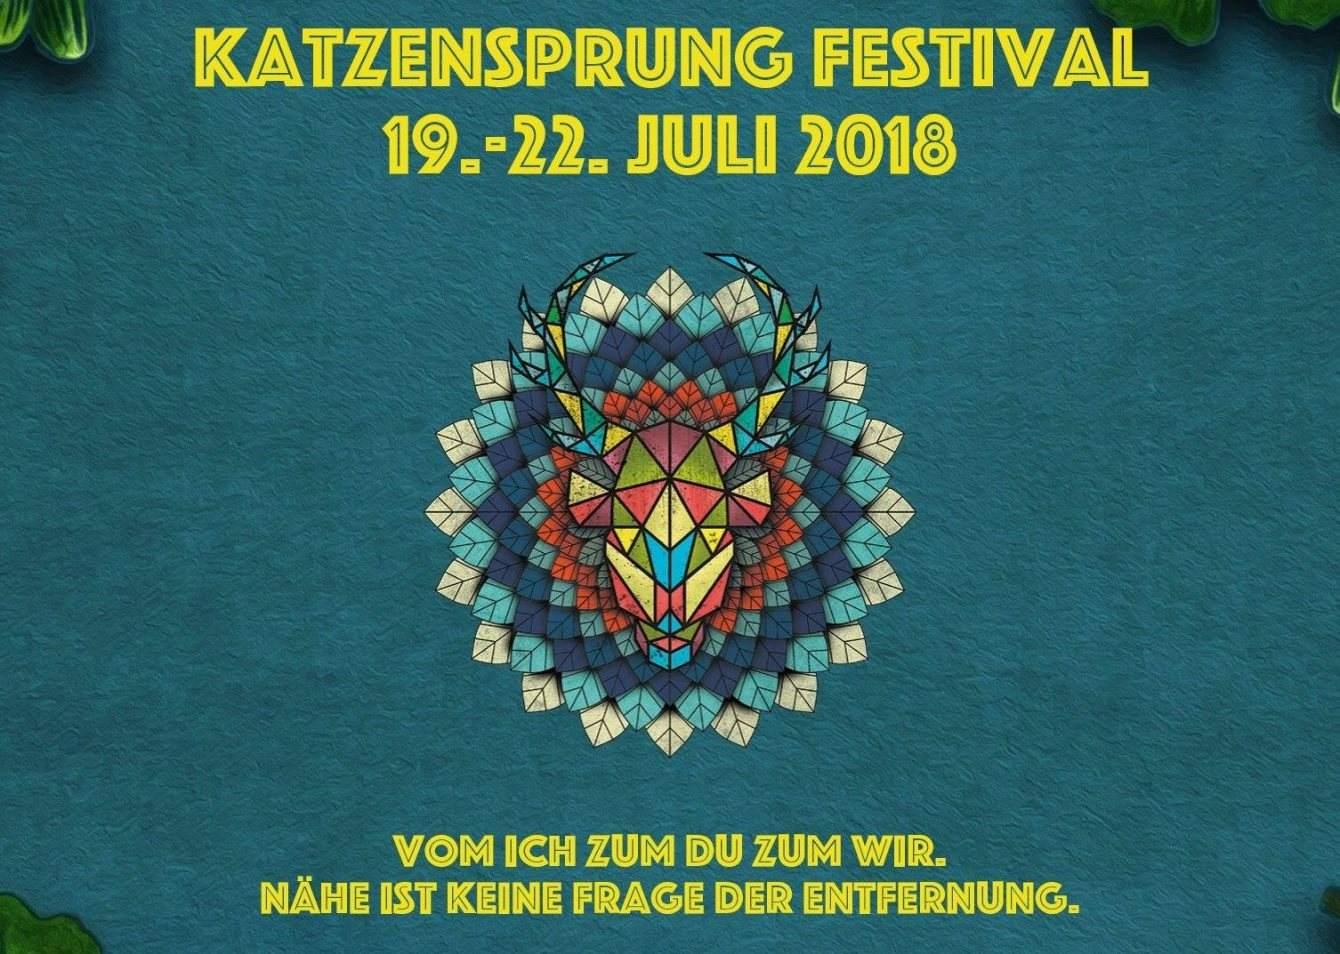 Katzensprung Festival - フライヤー表